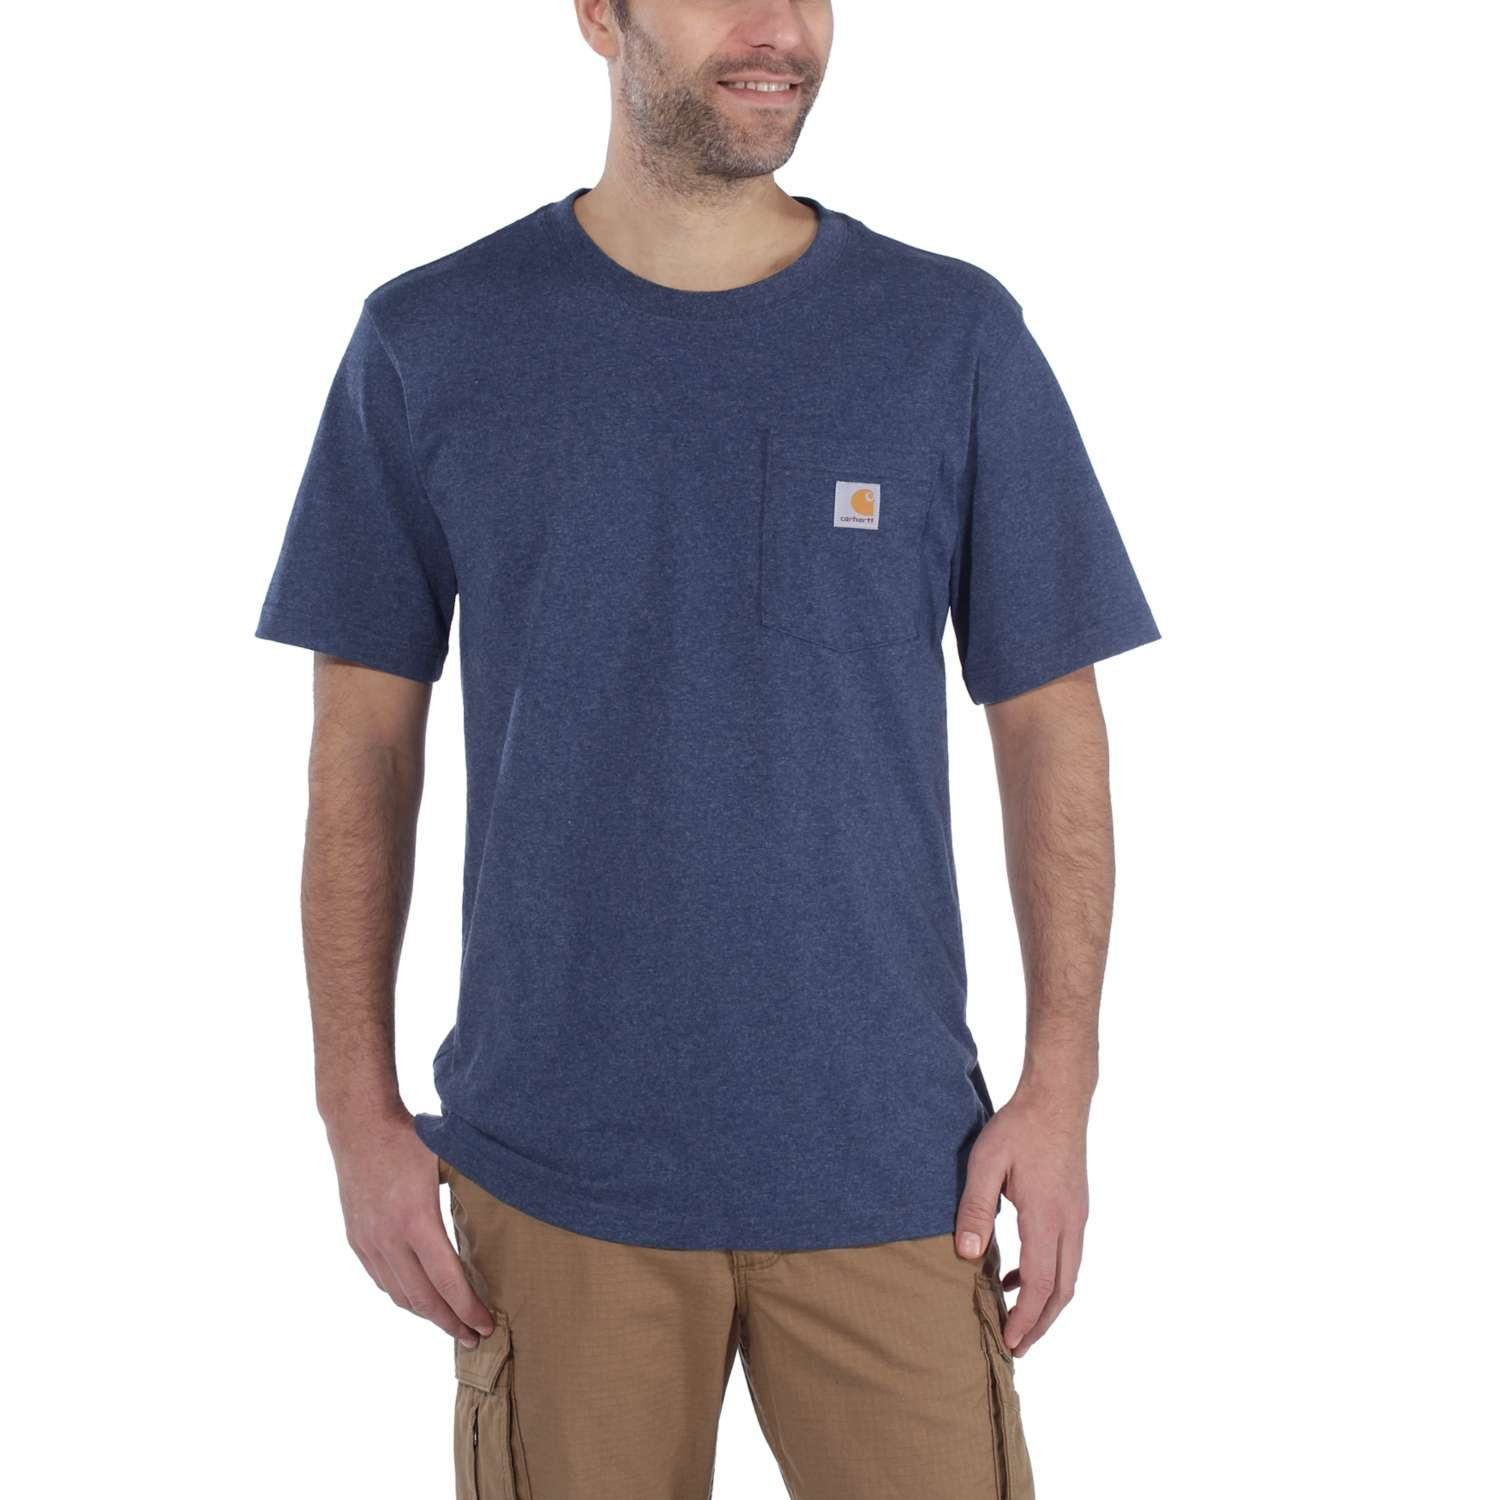 K87 mit Carhartt HEATHER DARK COBALT Brusttasche T-Shirt Pocket BLUE